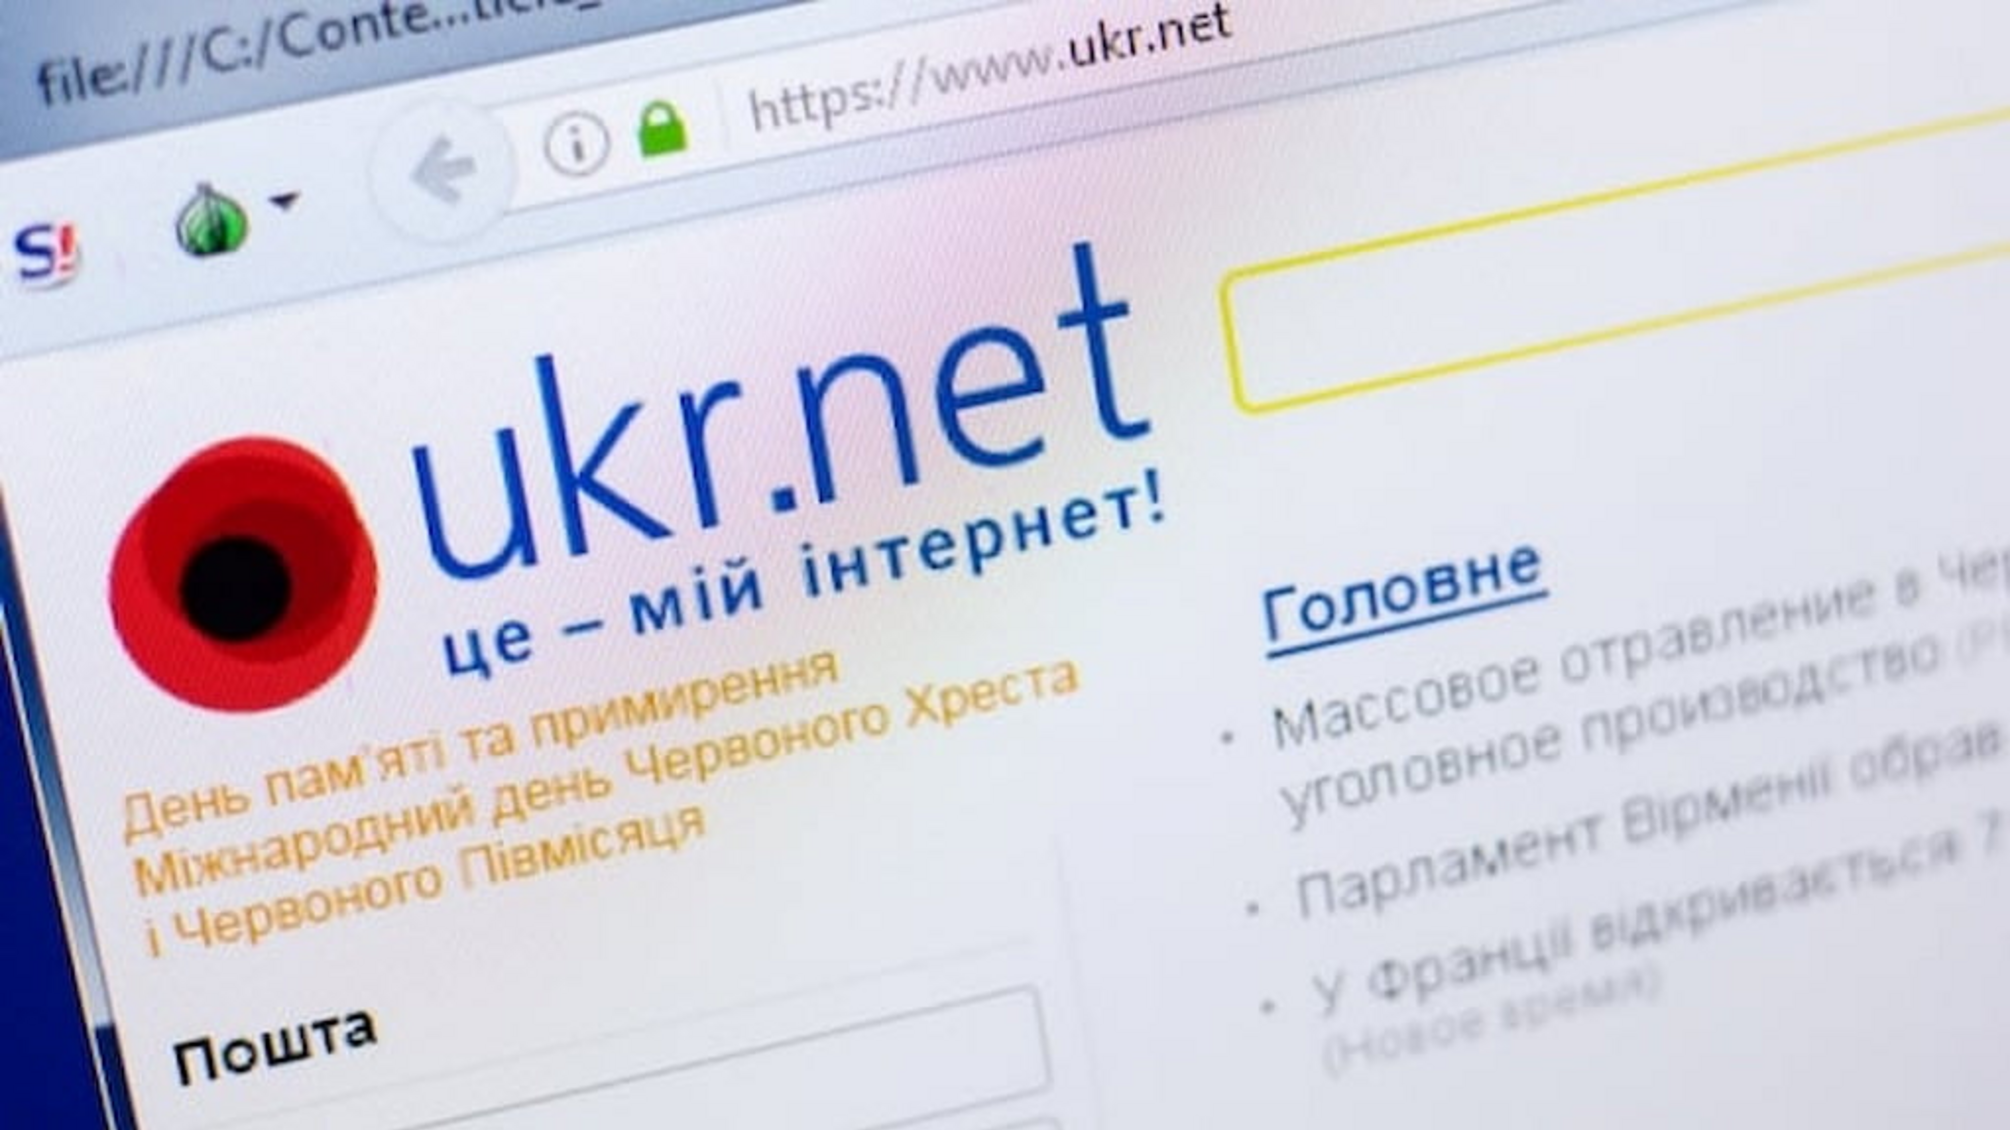 Домен порталу Ukr.net заблокований: комерційний директор компанії Роман Скрипник пояснив, що сталося